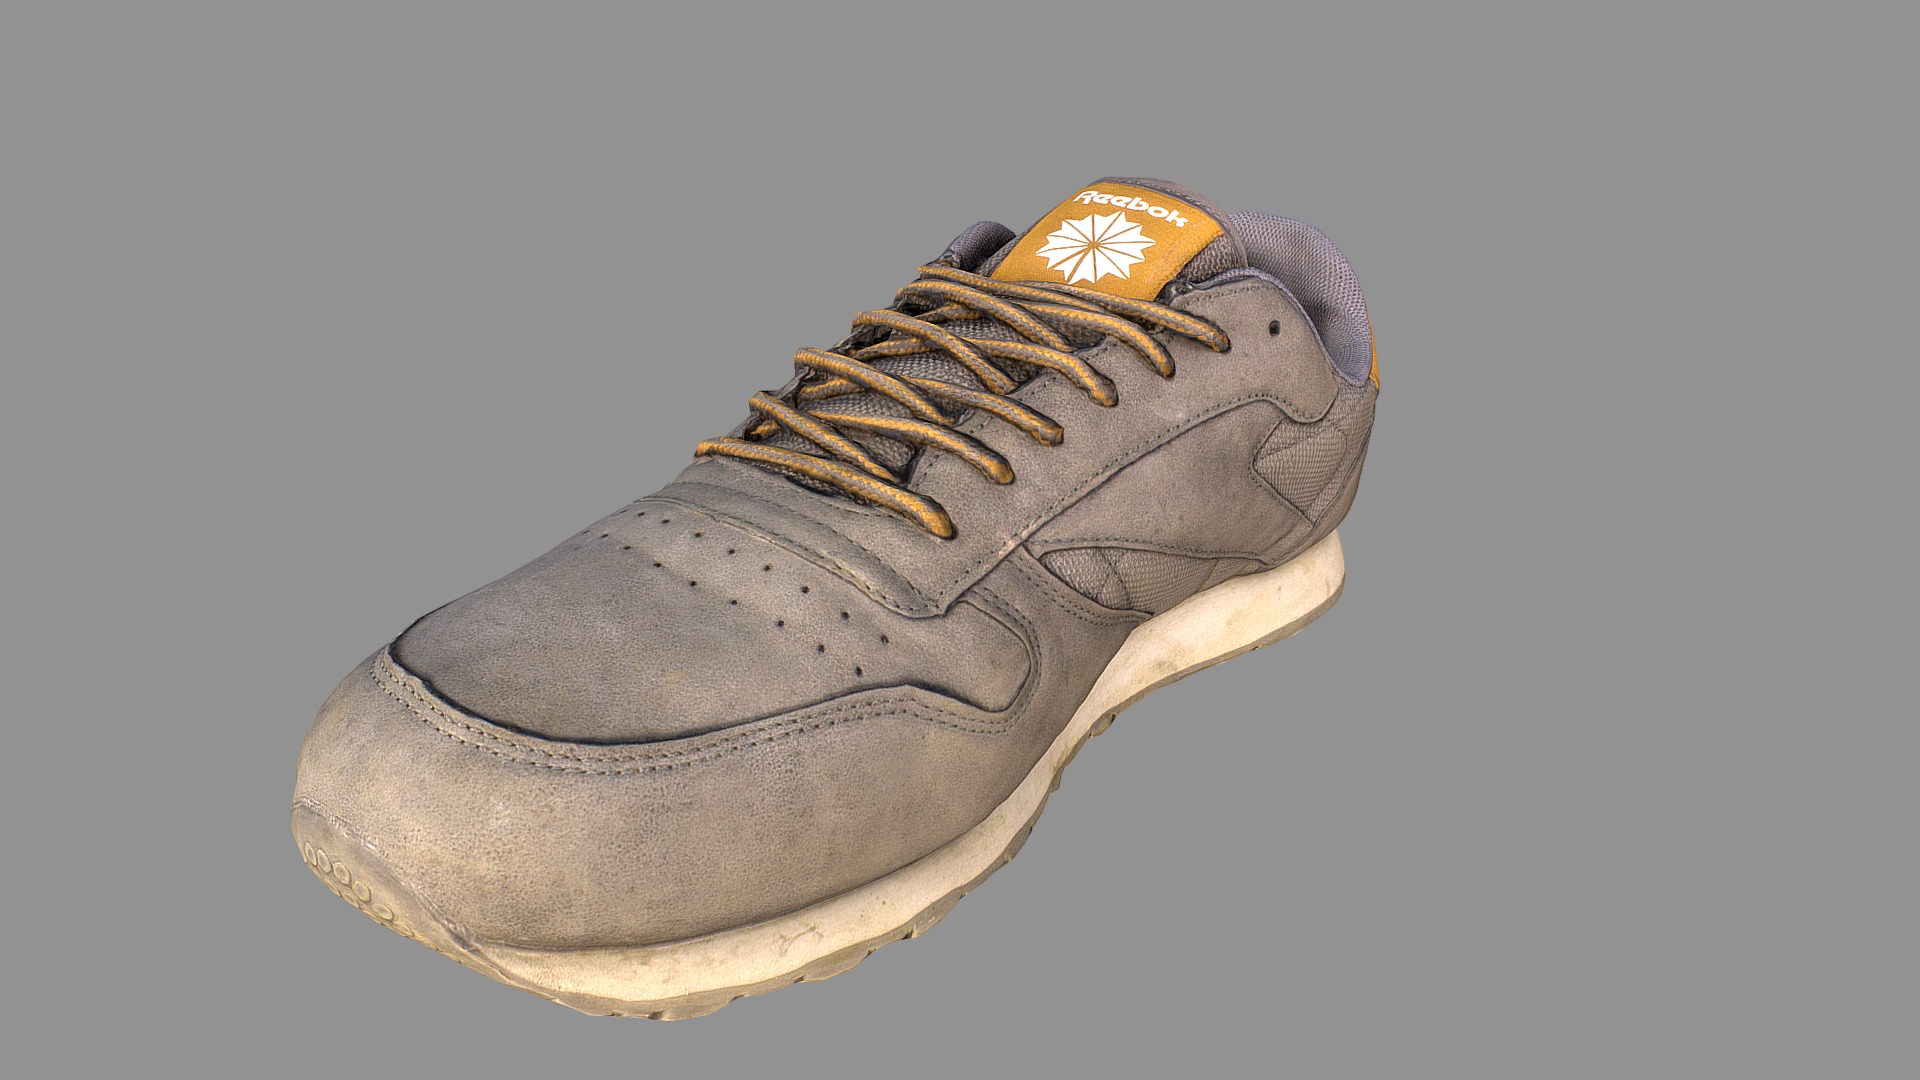 3D model Worn Reebok sneaker shoe 3D model (low-poly) - This is a 3D model of the Worn Reebok sneaker shoe 3D model (low-poly). The 3D model is about a brown shoe with a gold star.